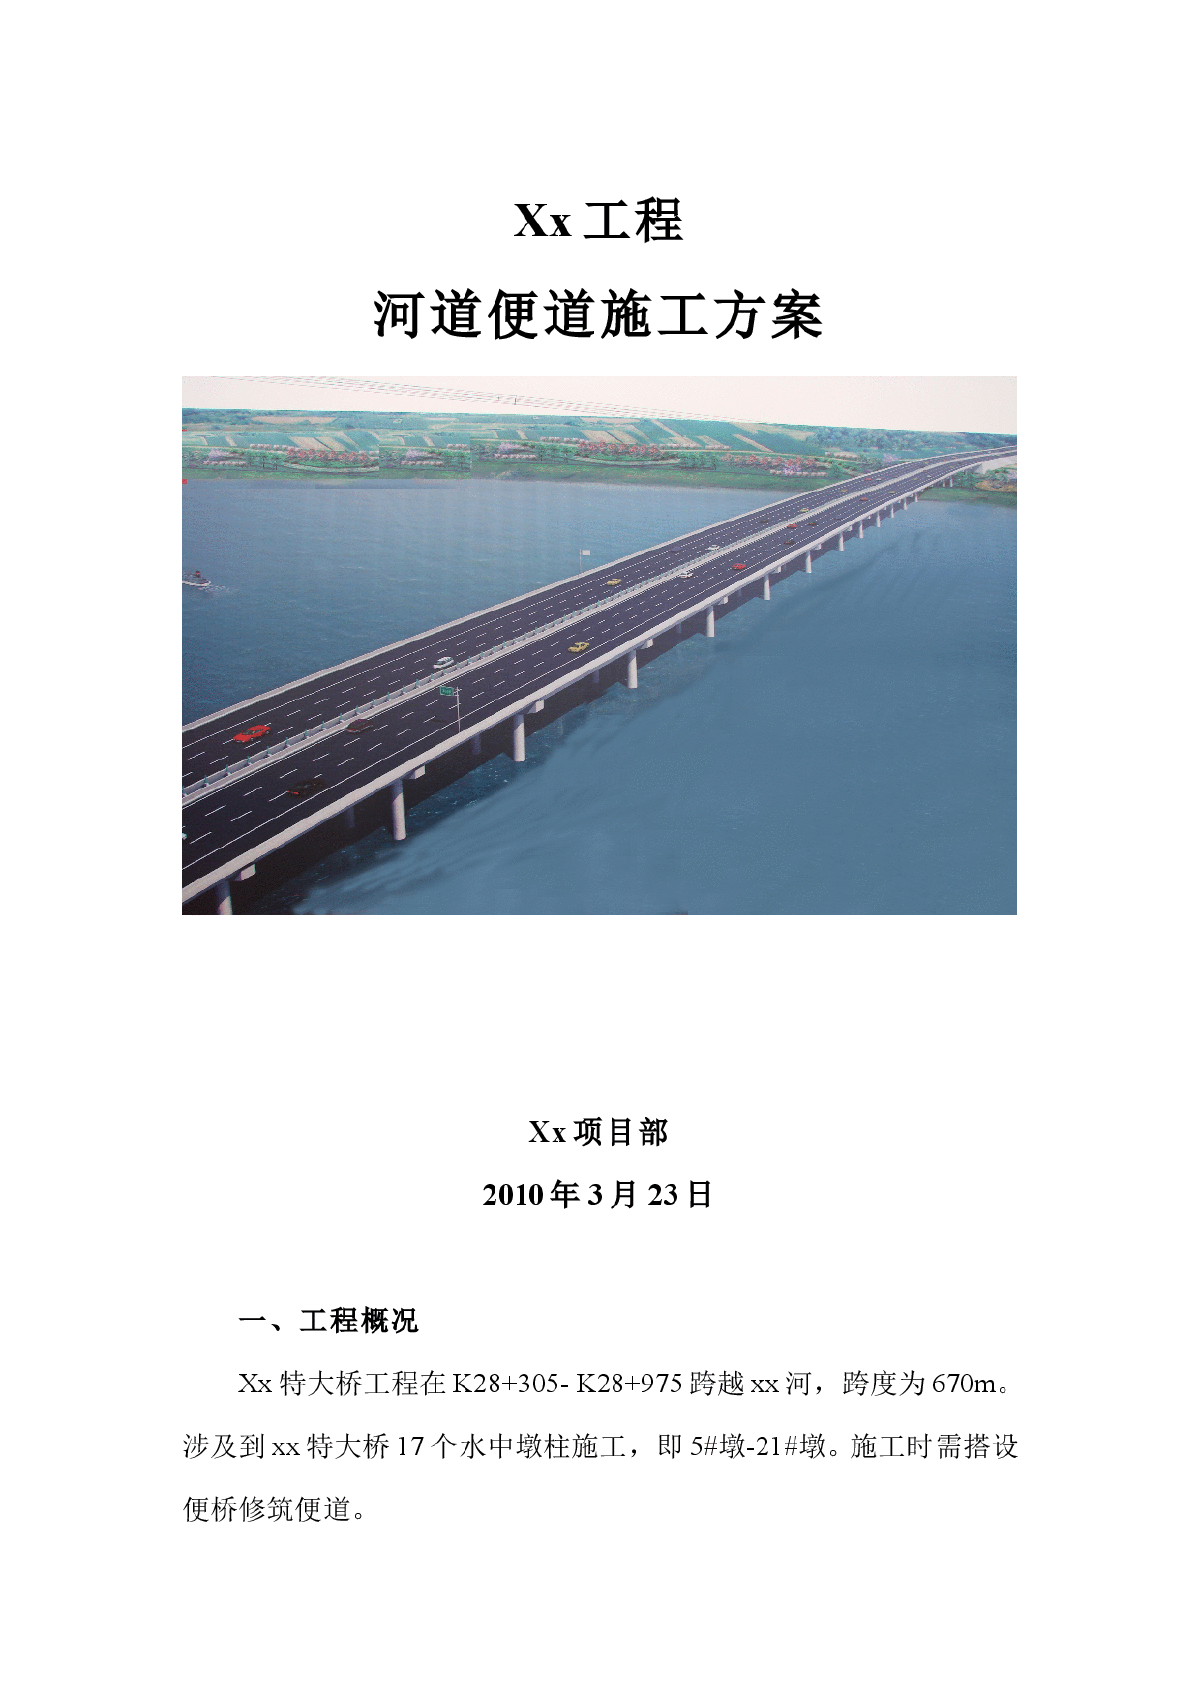 特大桥钢便桥施工方案 